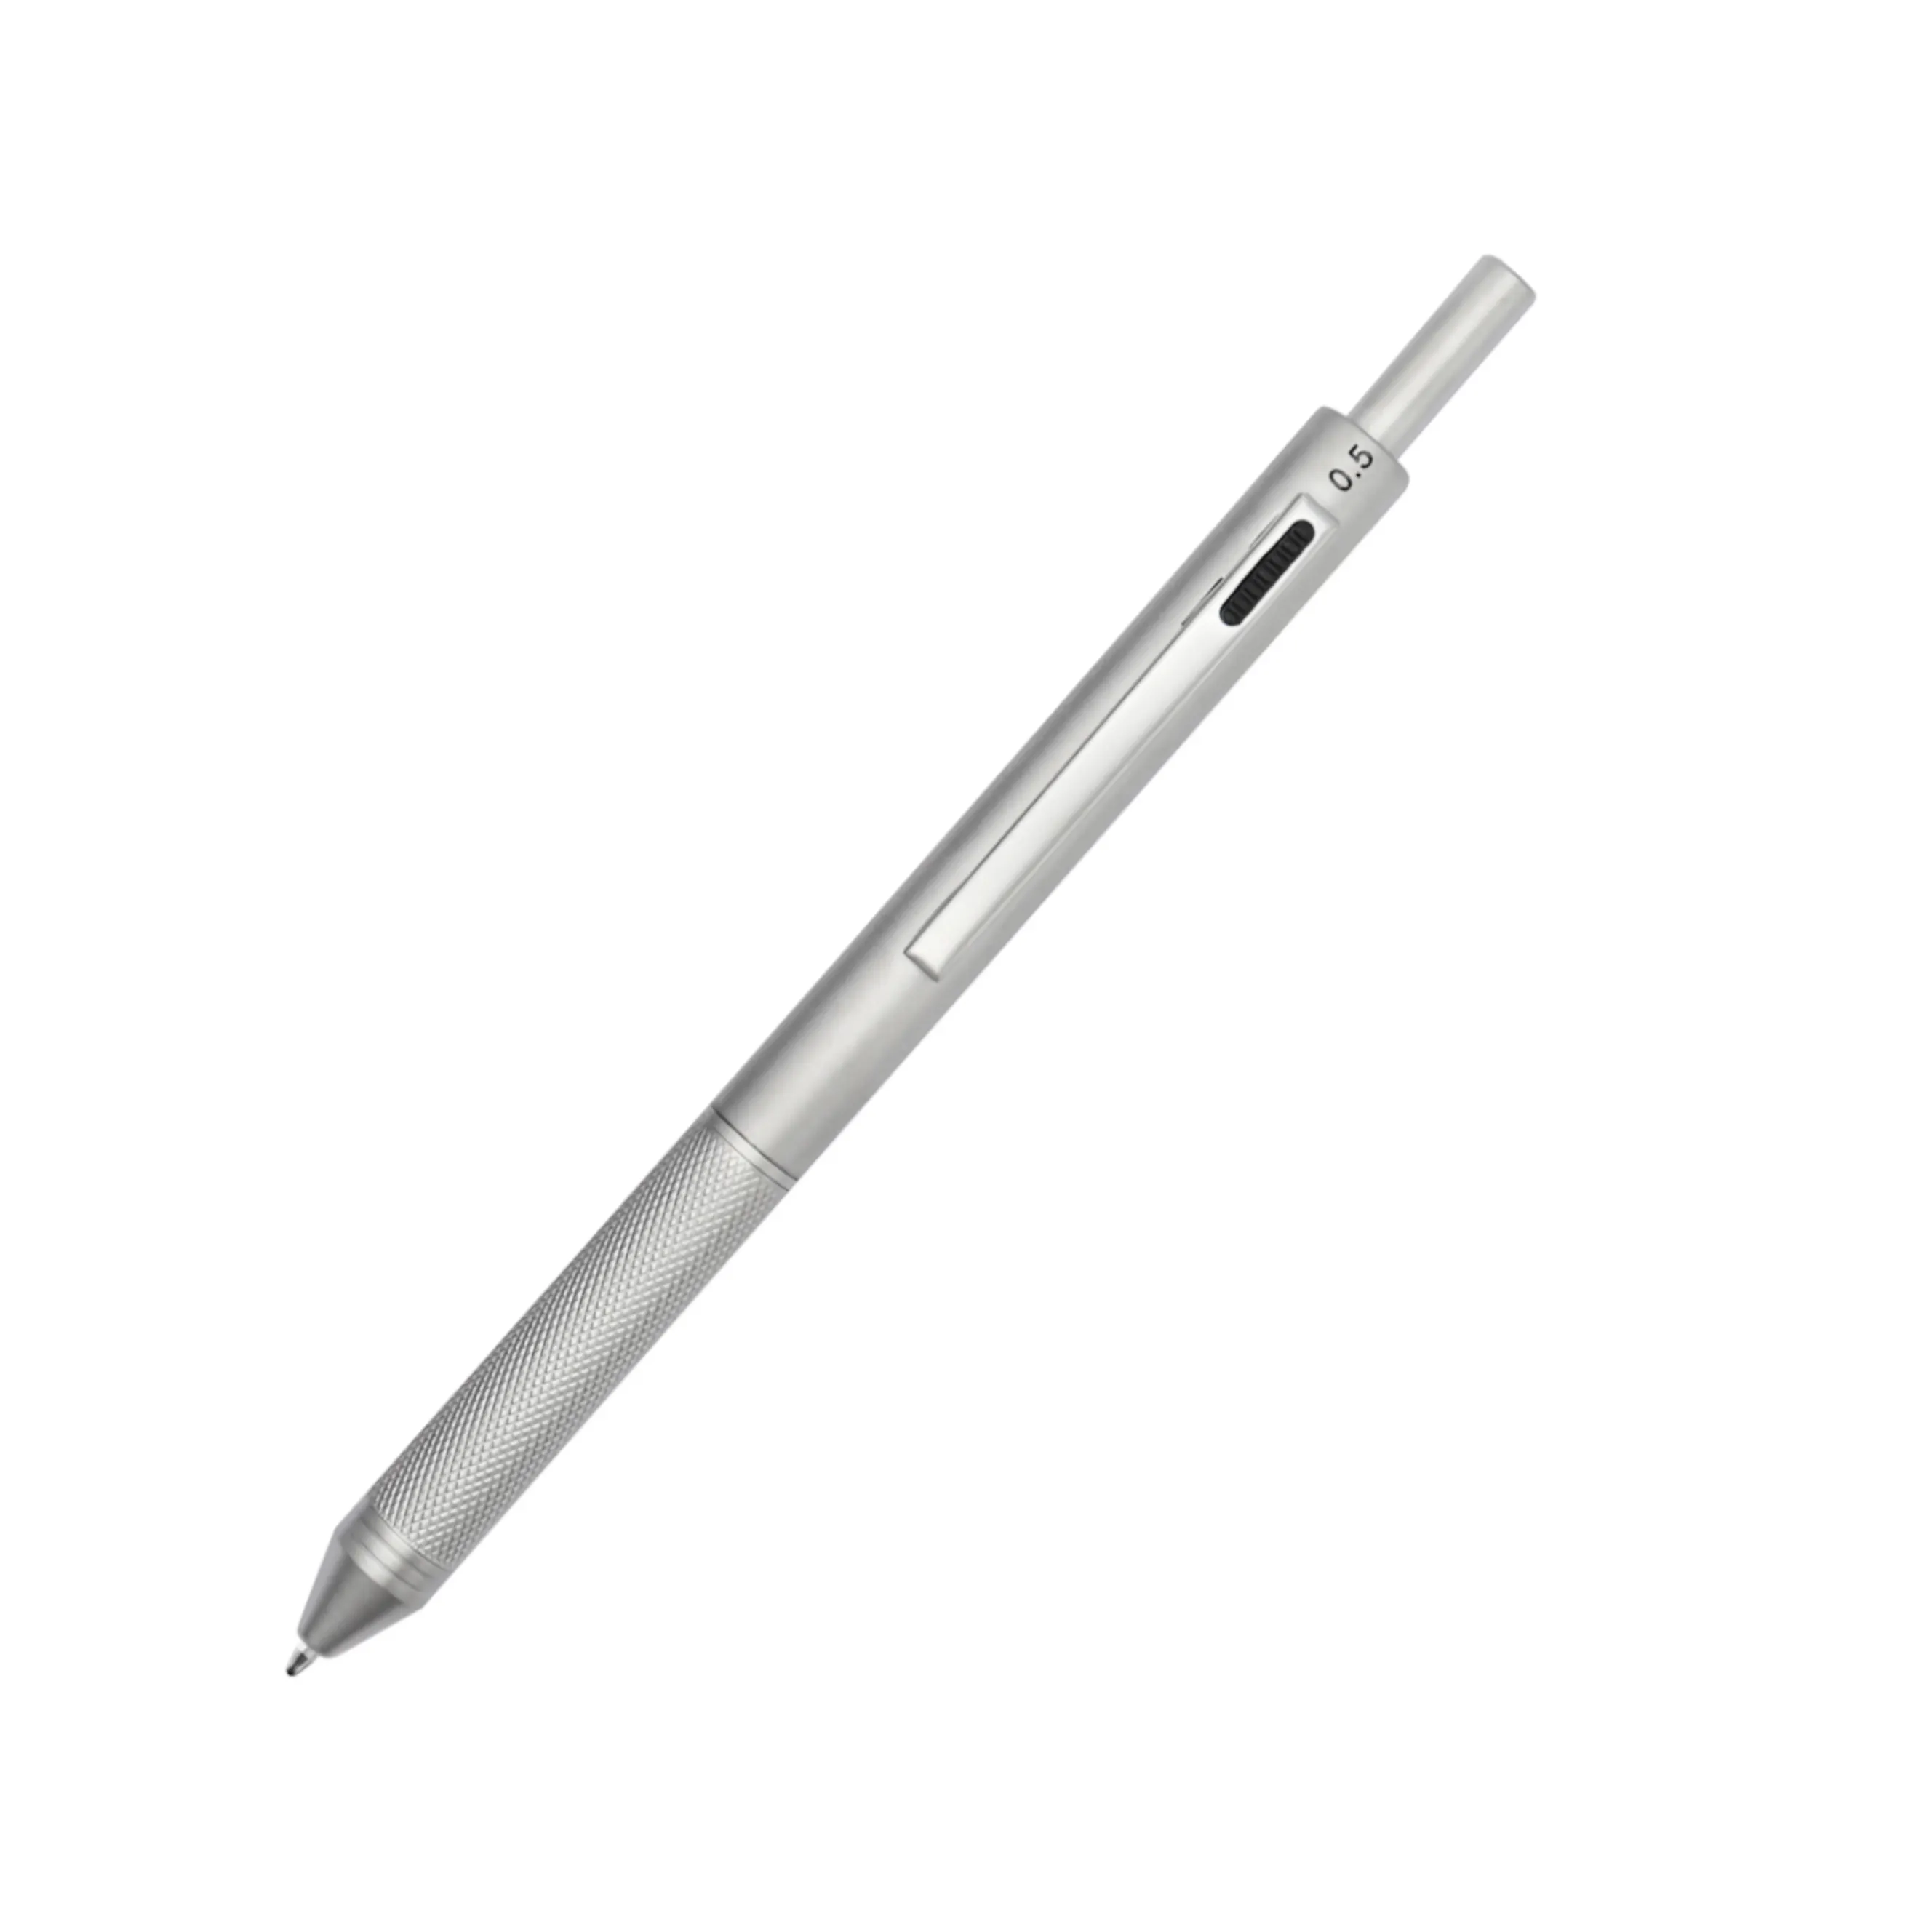 4で1 Multicolor Ball Pen Metal Material Office School Luxury Pen Mechanical Pencil Multifunction Metal Pen